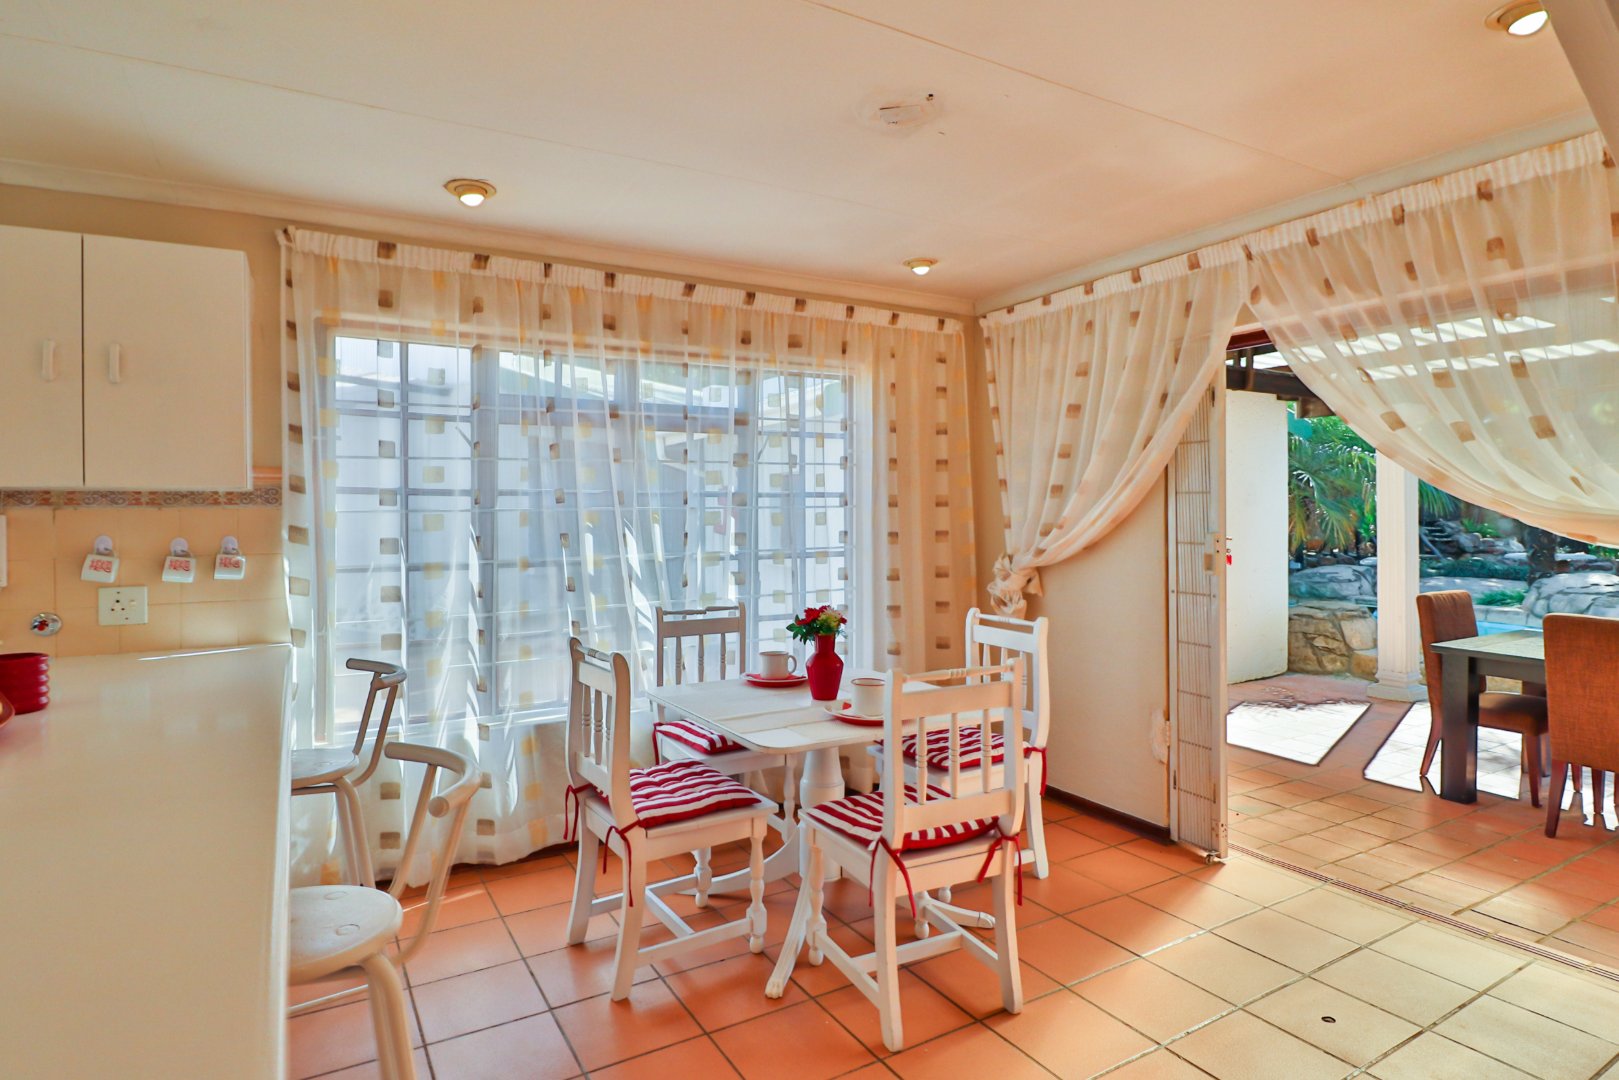 6 Bedroom Property for Sale in Glen Marais Gauteng